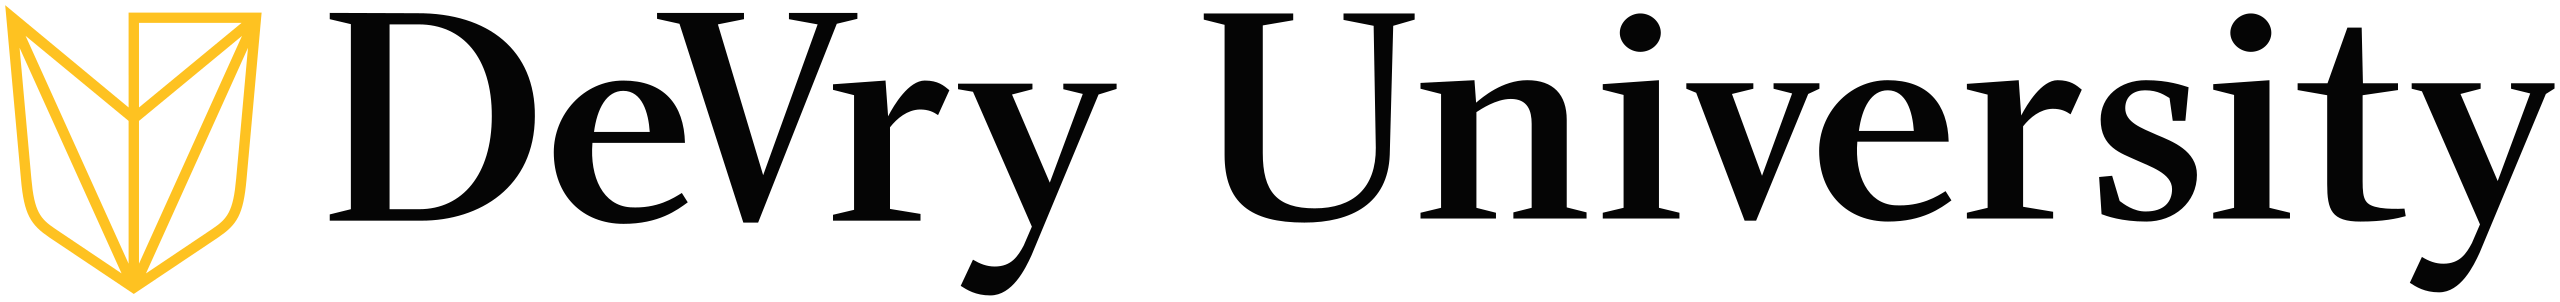 DeVry-University logo